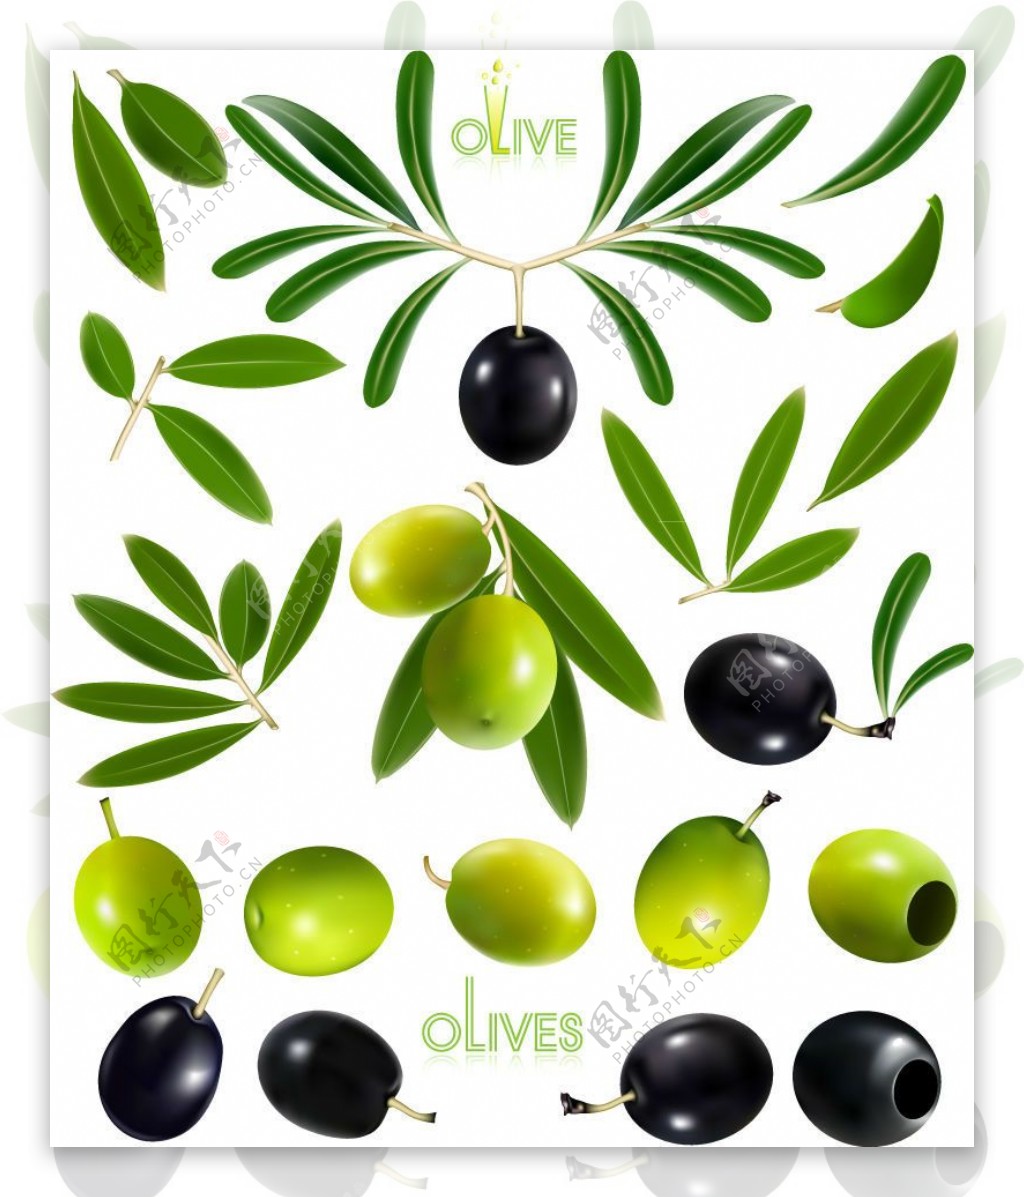 精美油橄榄设计矢量素材